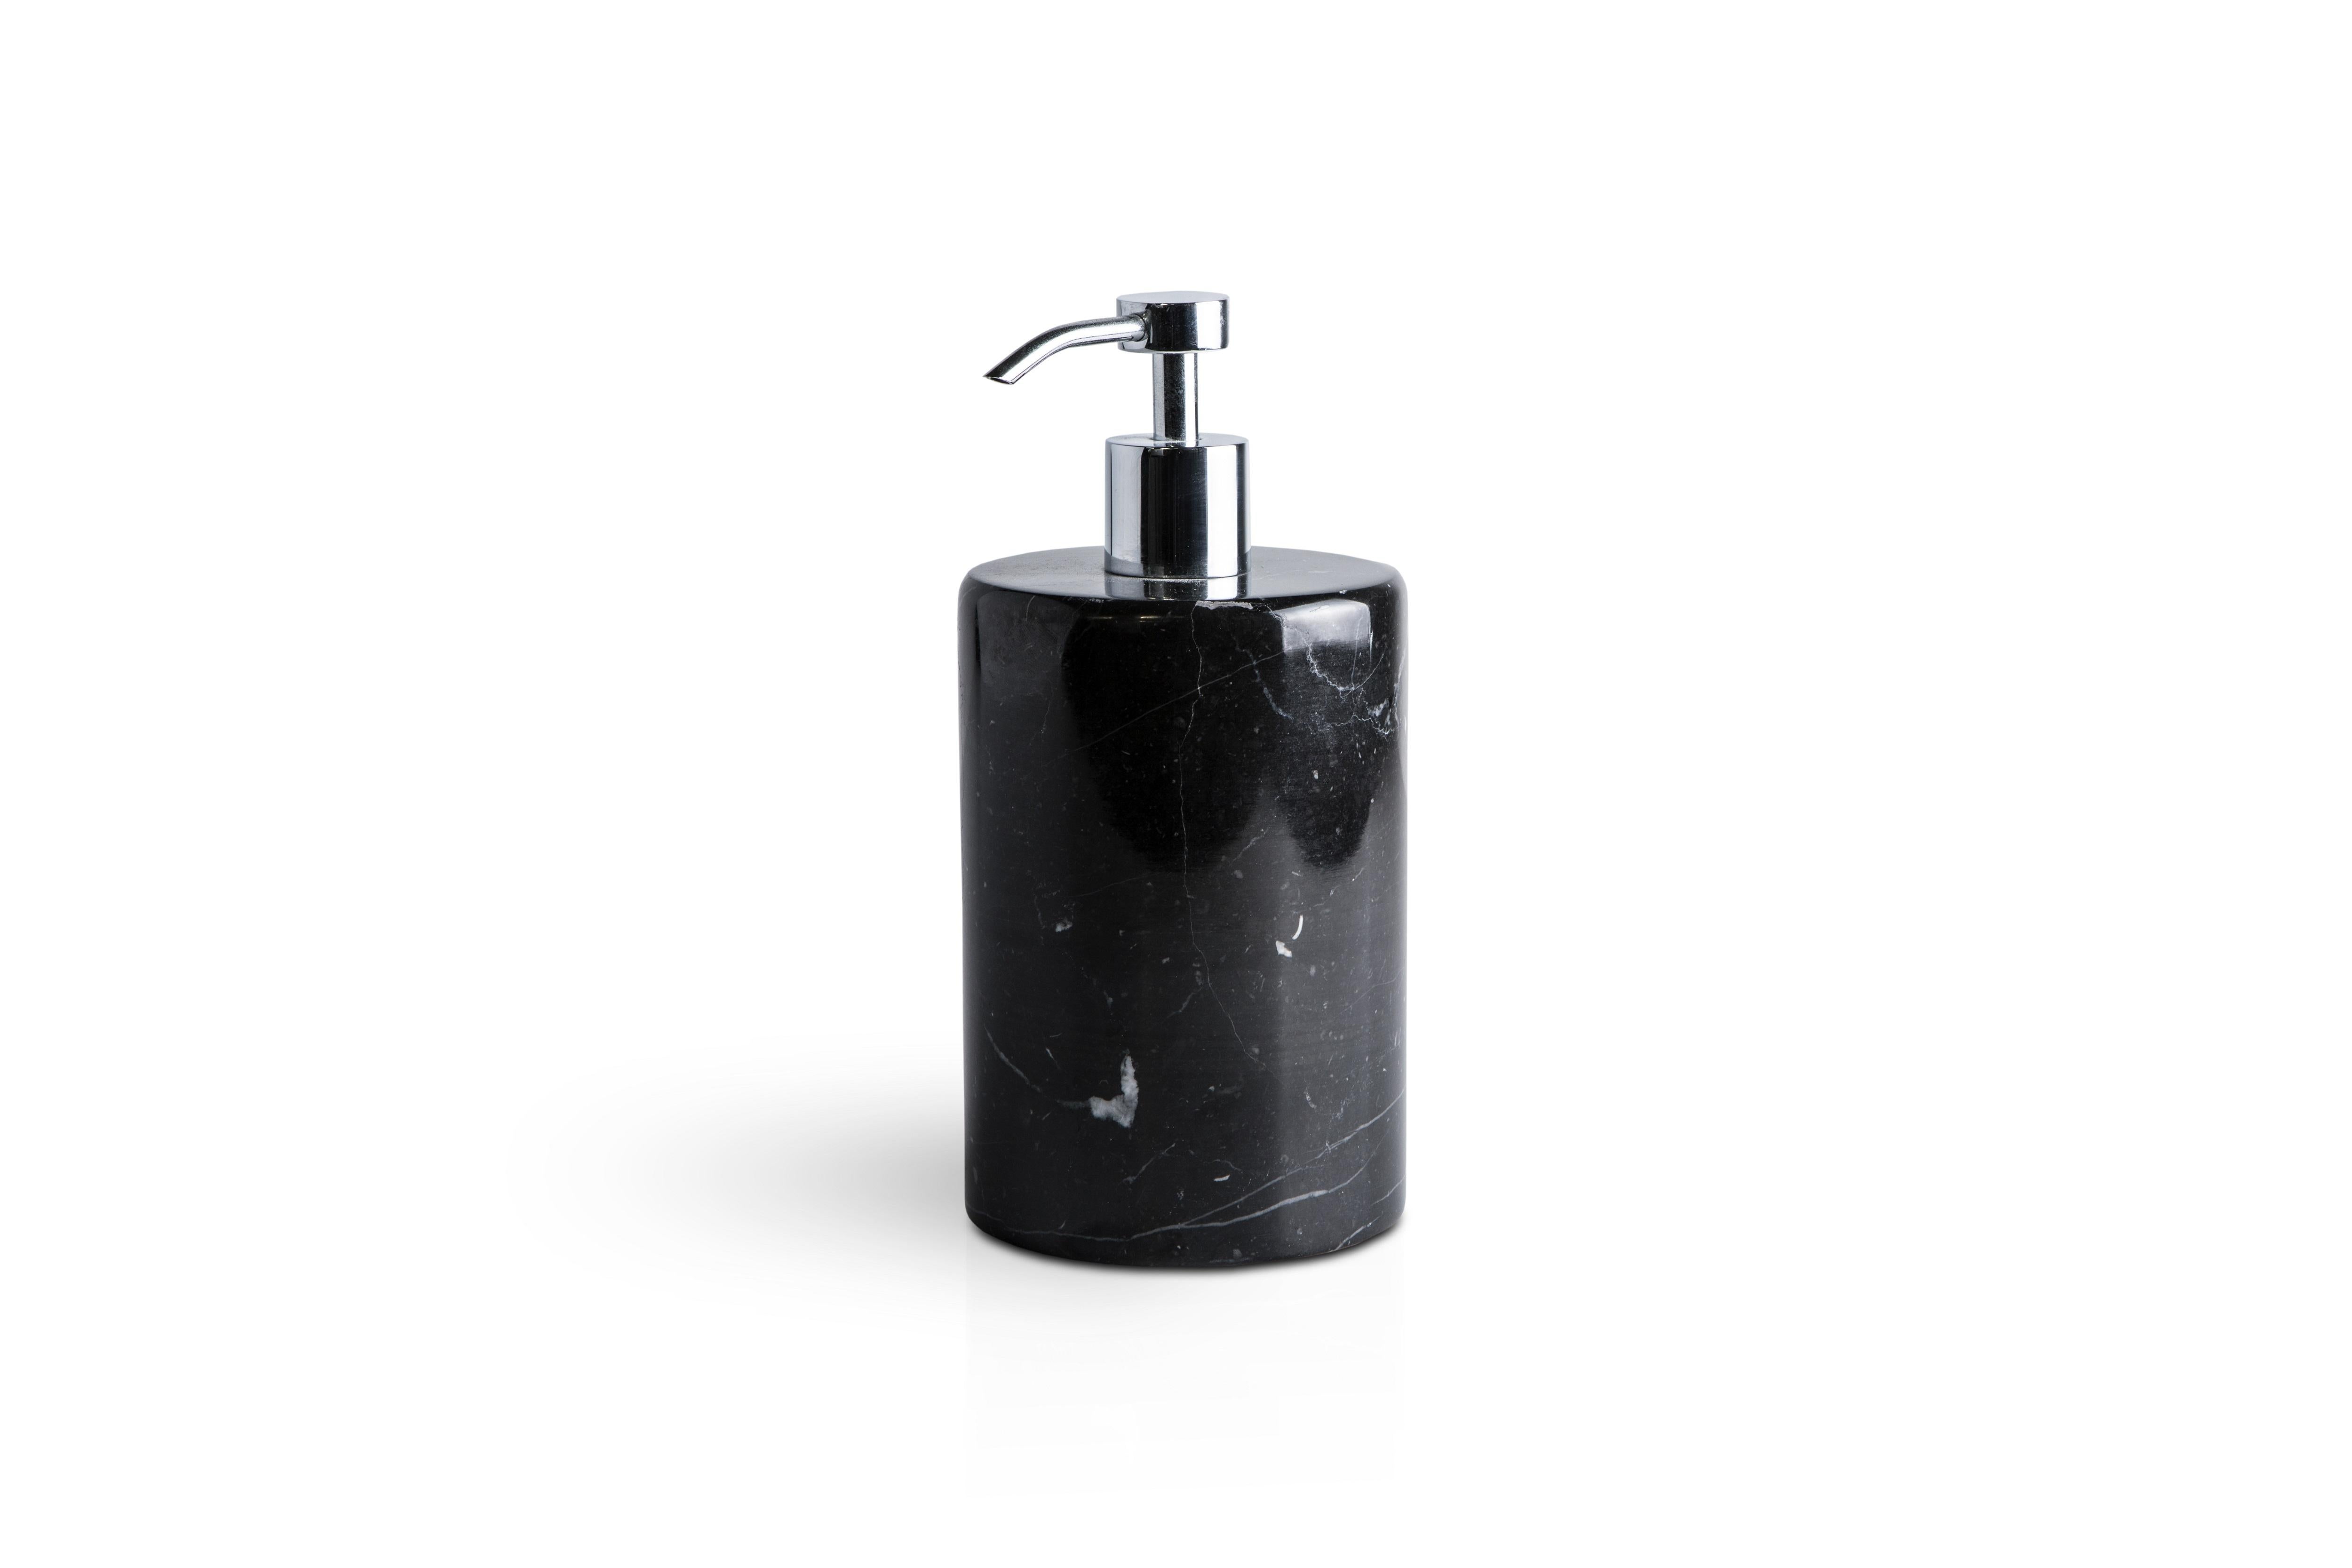 Un ensemble arrondi pour la salle de bain en marbre noir Marquina qui comprend : Un distributeur de savon (diamètre 9 x 19,5 cm), un porte-brosse à dents (diamètre 7 x 12 cm), un porte-savon (diamètre 10 x 2 cm).
Chaque pièce est en quelque sorte